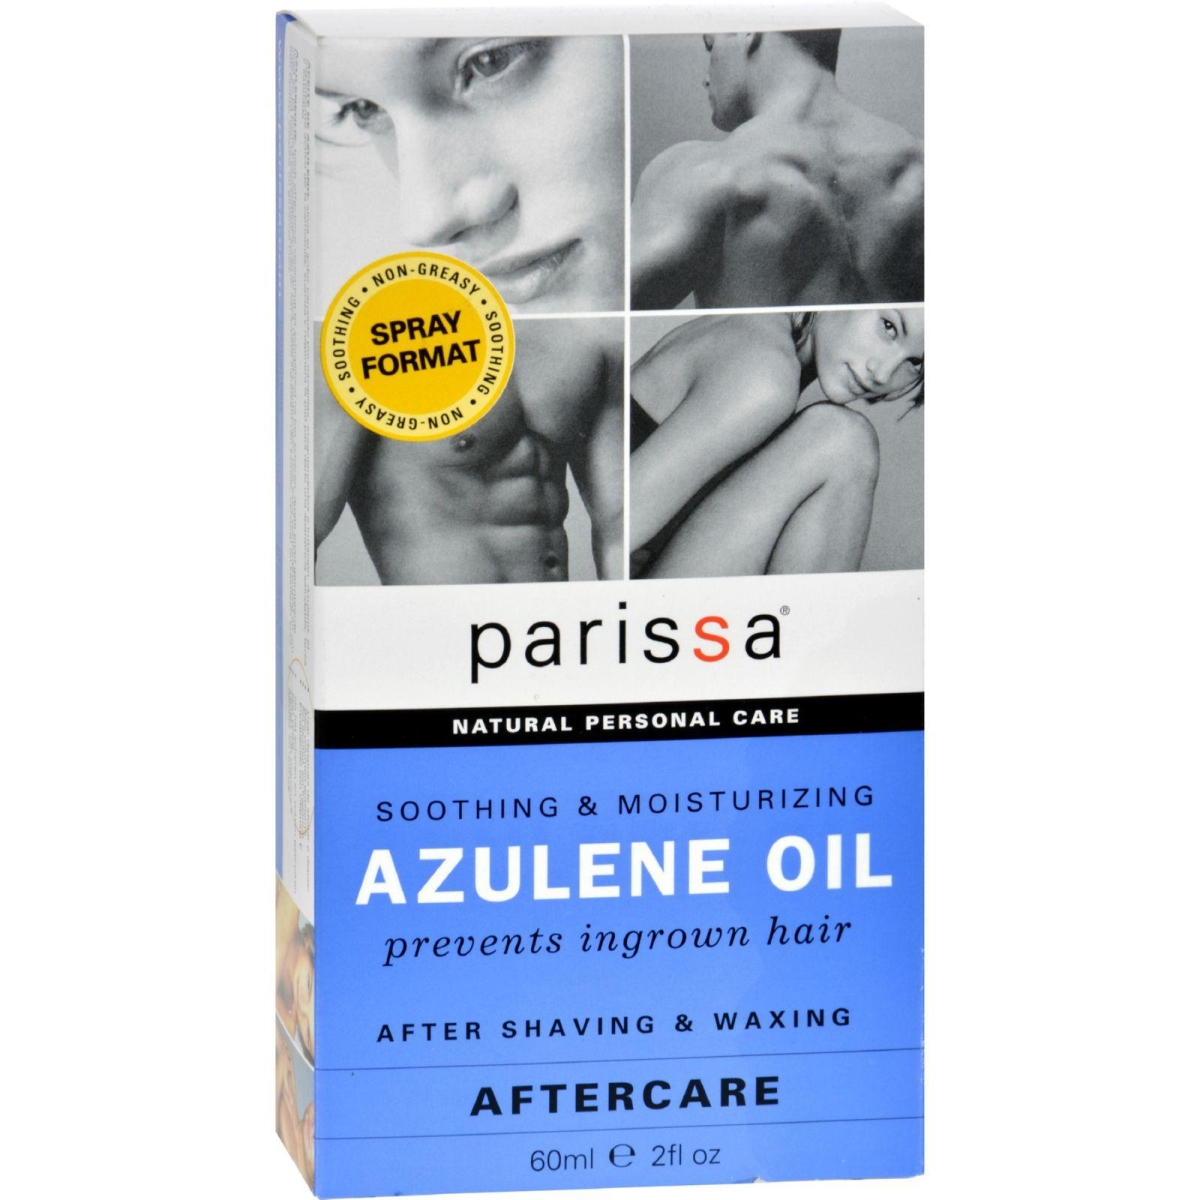 Hg0521310 2 Fl Oz Azulene Oil After Care